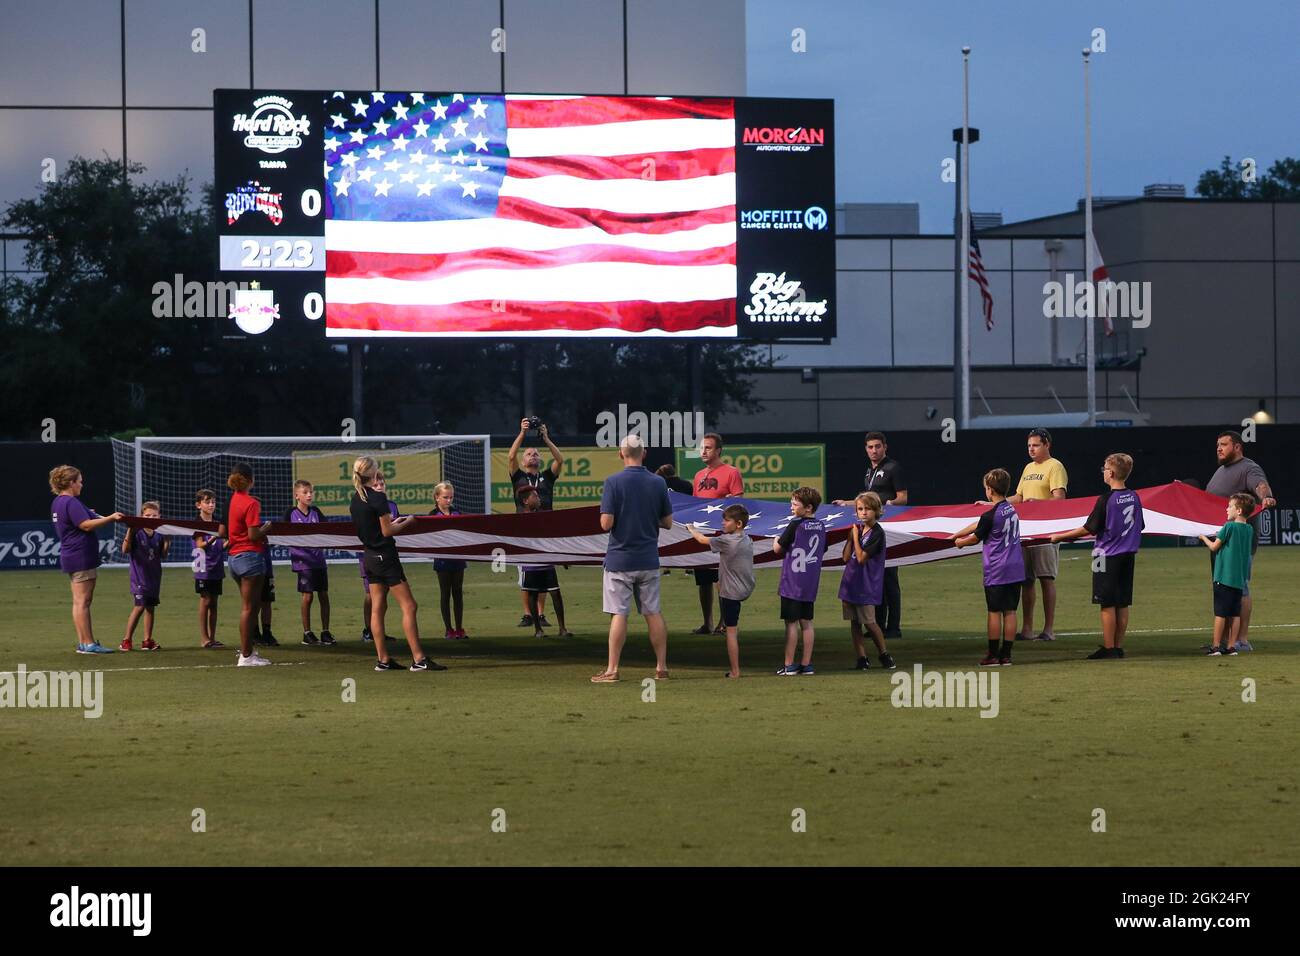 St. Petersburg, FL USA; Eine allgemeine Ansicht der Nationalhymne und Flaggen, um den zwanzigsten Jahrestag des Jahres 9/11 während eines USL-Fußballspiels zu würdigen Stockfoto